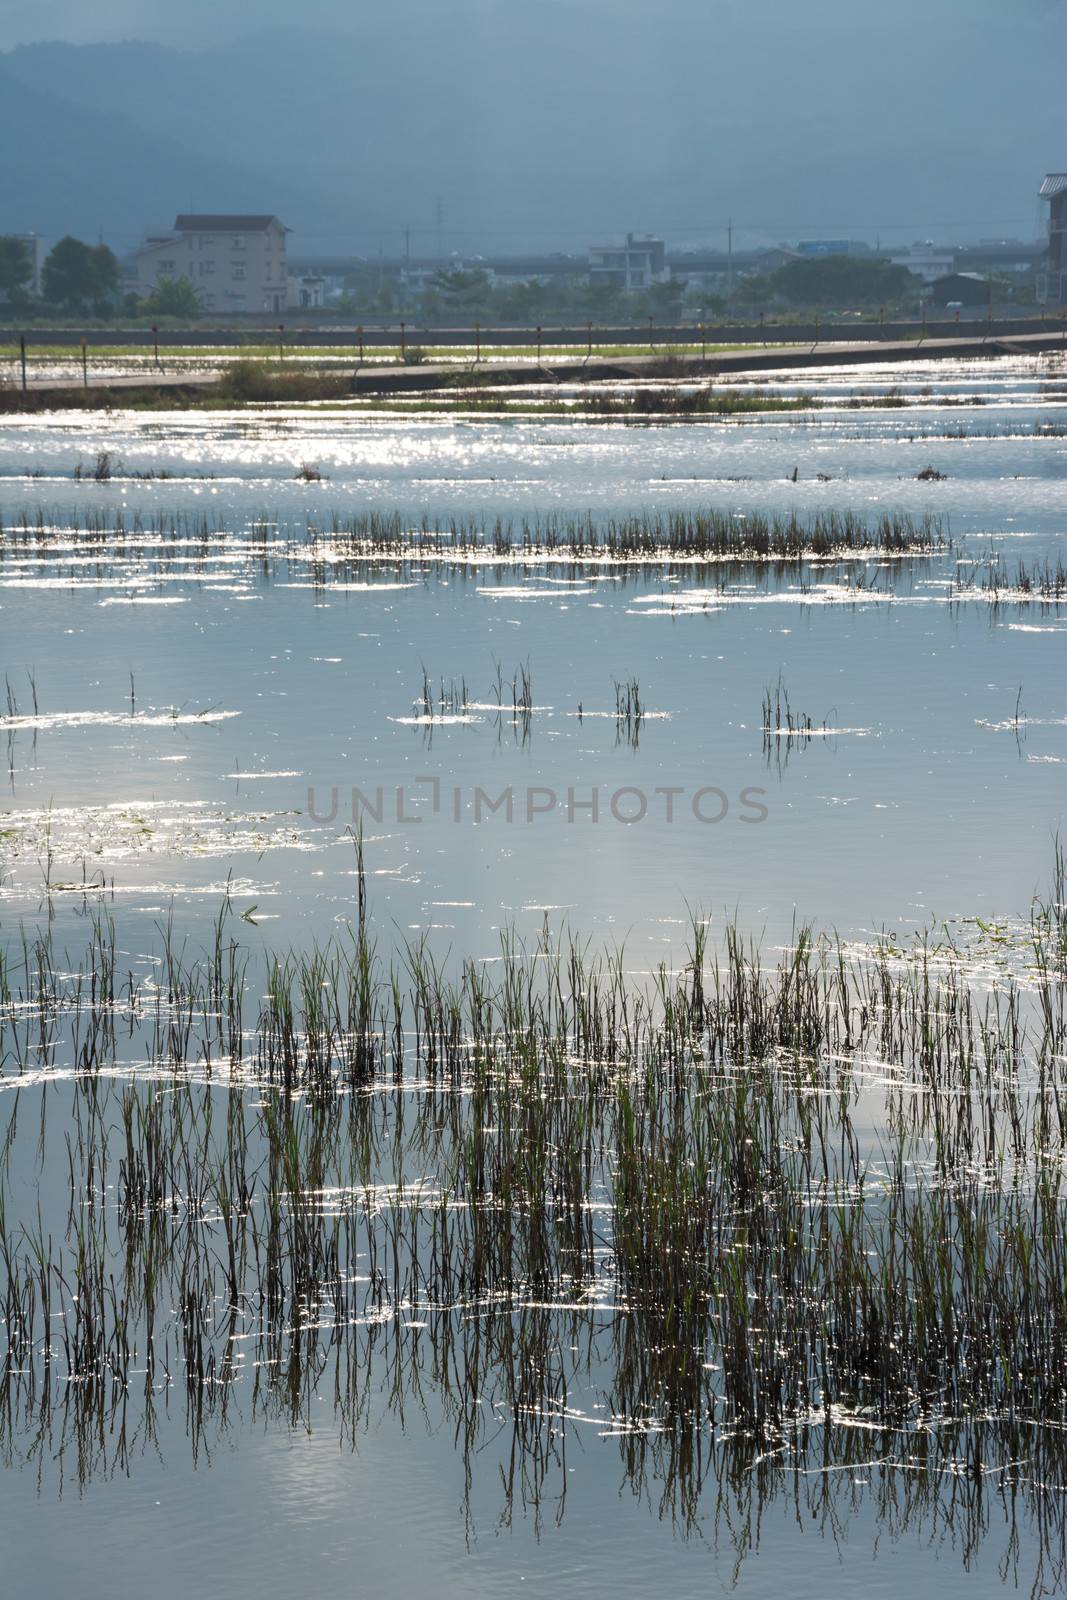 Landscape with a swamp by elwynn